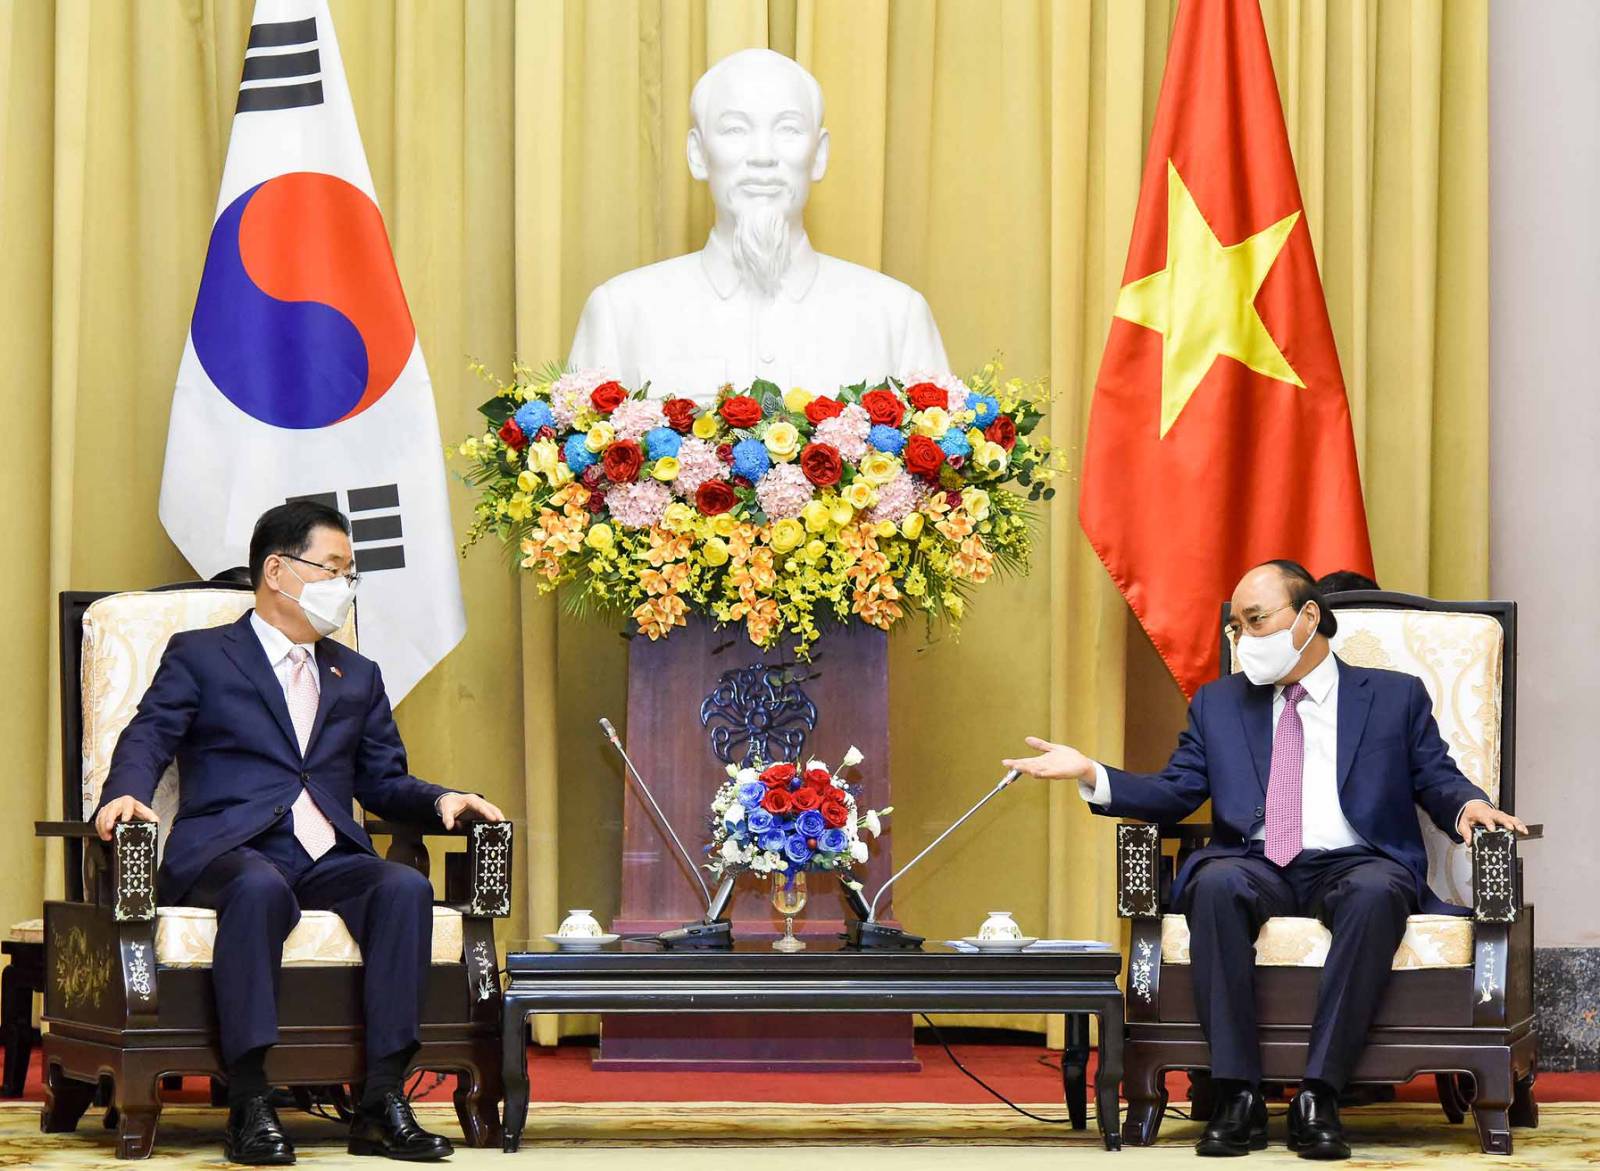 Việt Nam - Hàn Quốc là hai quốc gia có quan hệ hợp tác mật thiết trong nhiều lĩnh vực khác nhau. Xem những hình ảnh về sự hợp tác này để cảm nhận rõ hơn về sự đoàn kết và phát triển của hai quốc gia này.